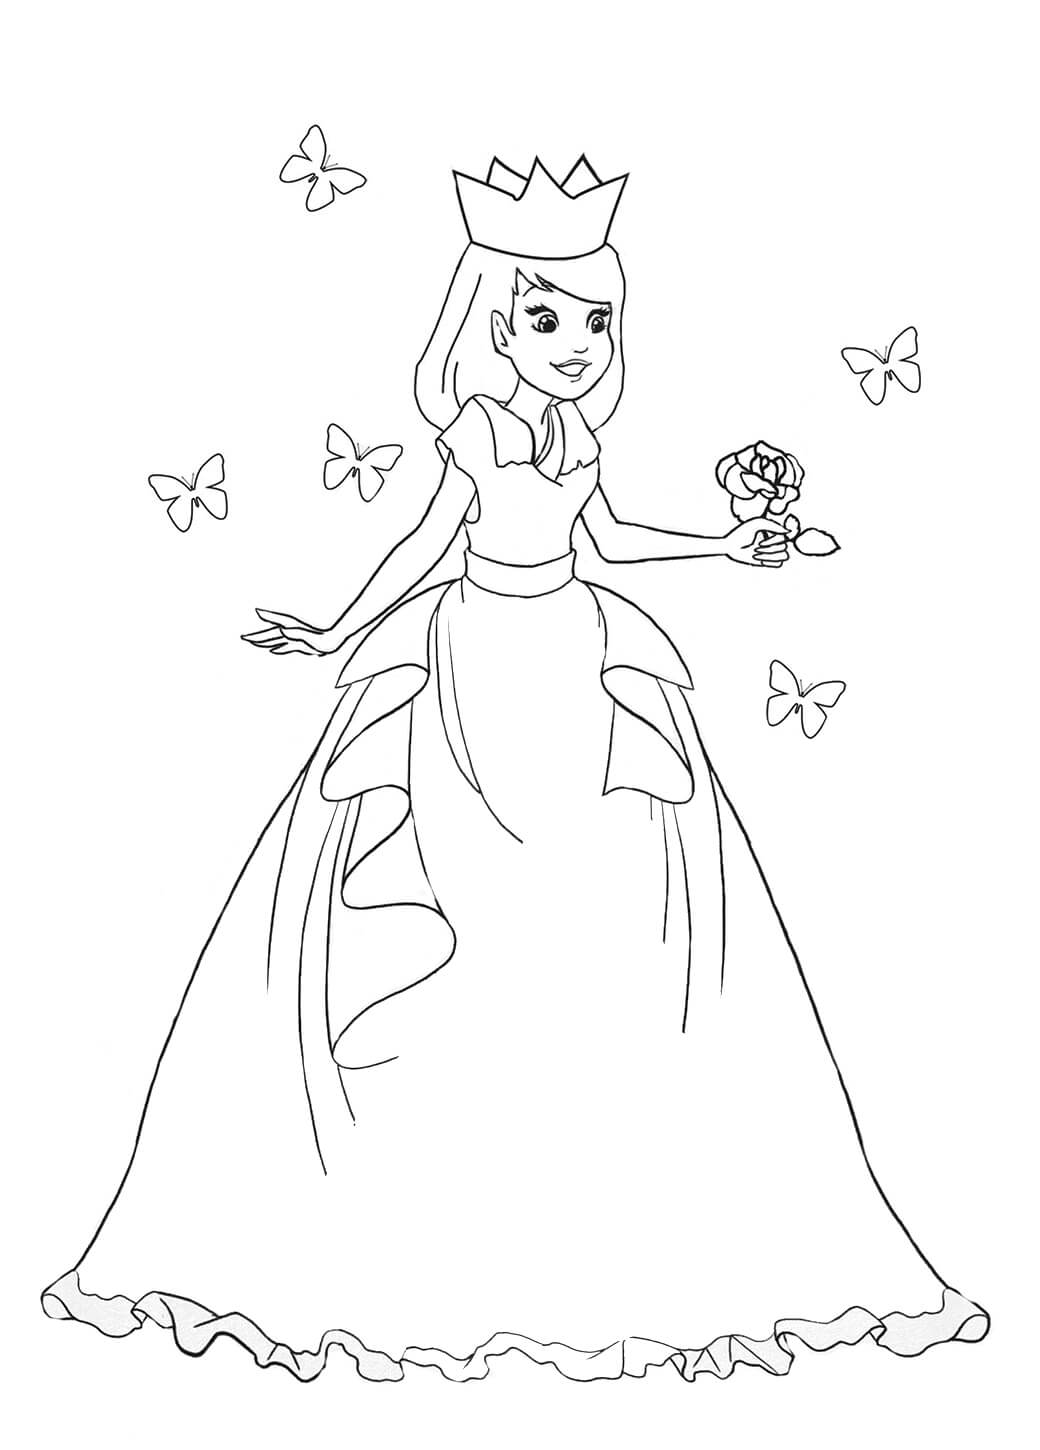 Princezna Drží Květinu s Motýly omalovánka